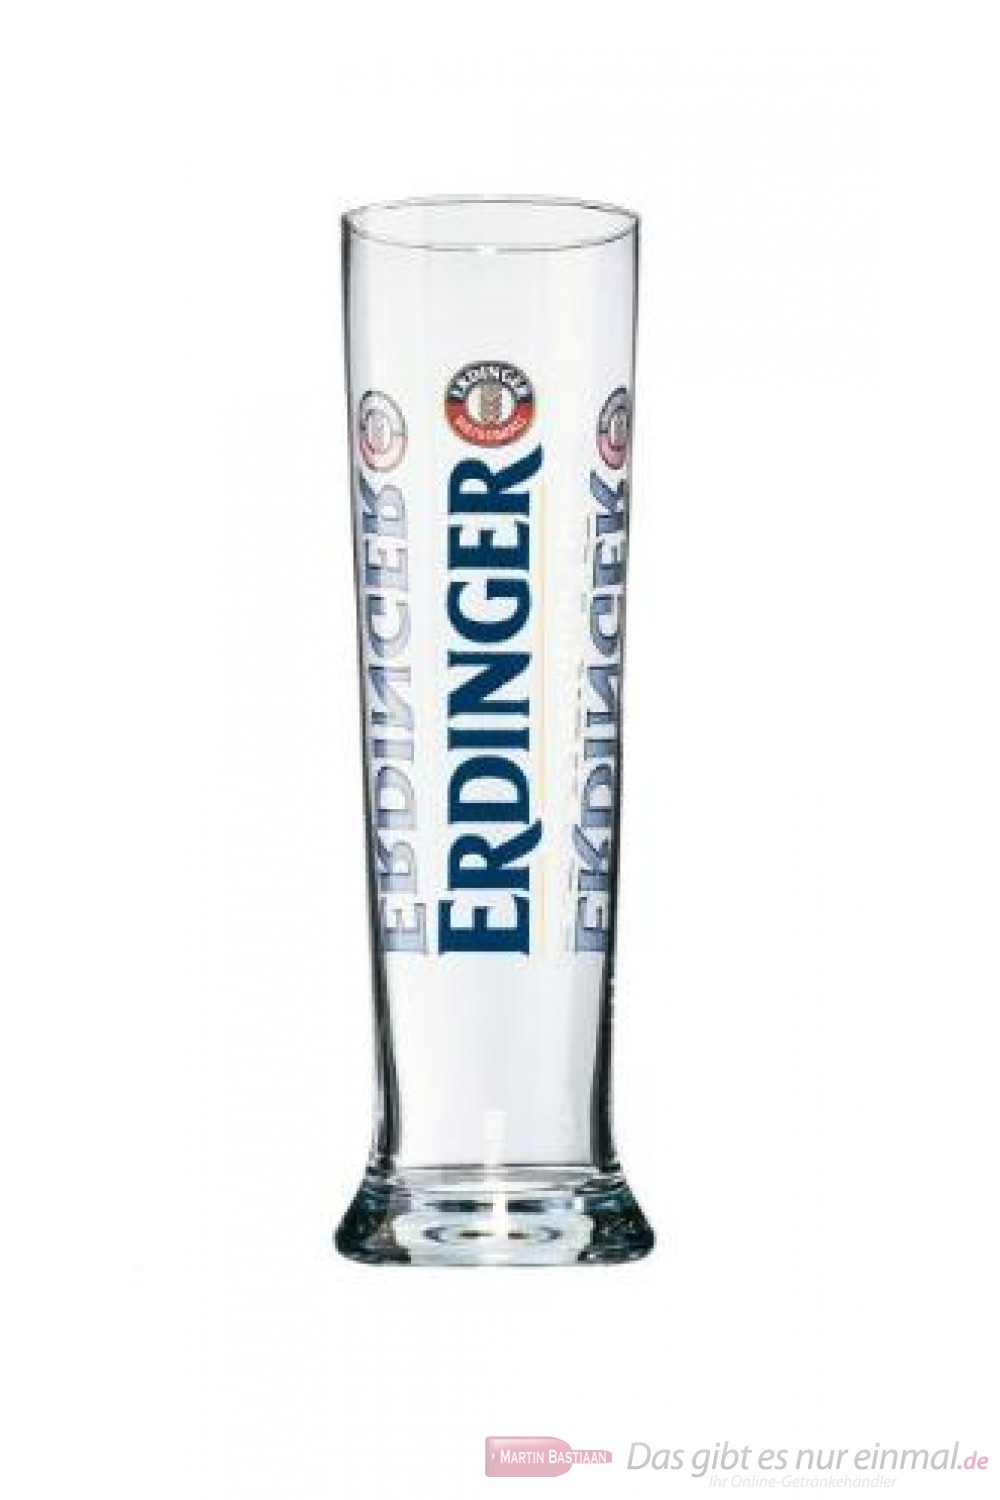 Erdinger Wei/ßbierglas 0,3 l